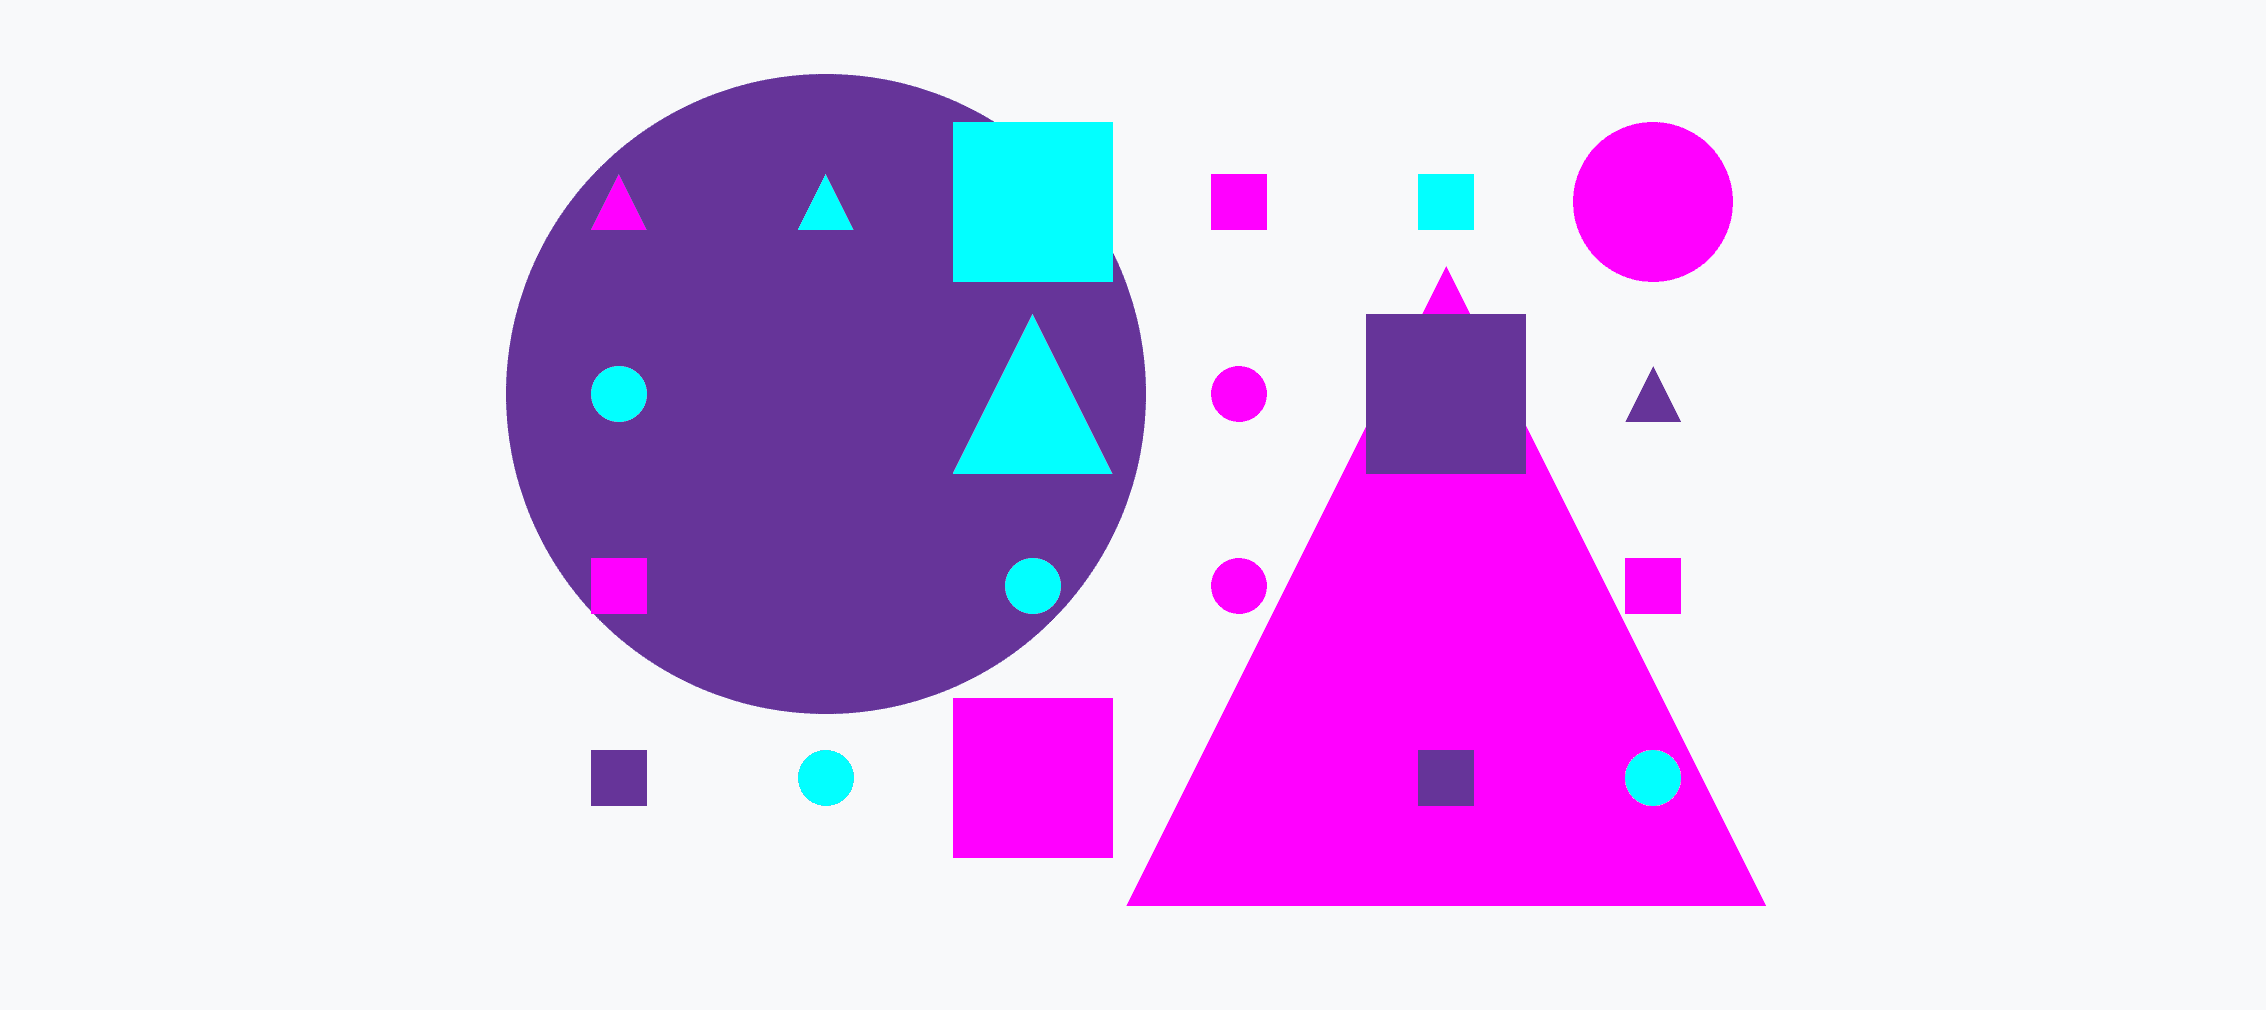 Ein buntes Raster mit kleinen und großen Kreisen, Dreiecken und Quadraten.